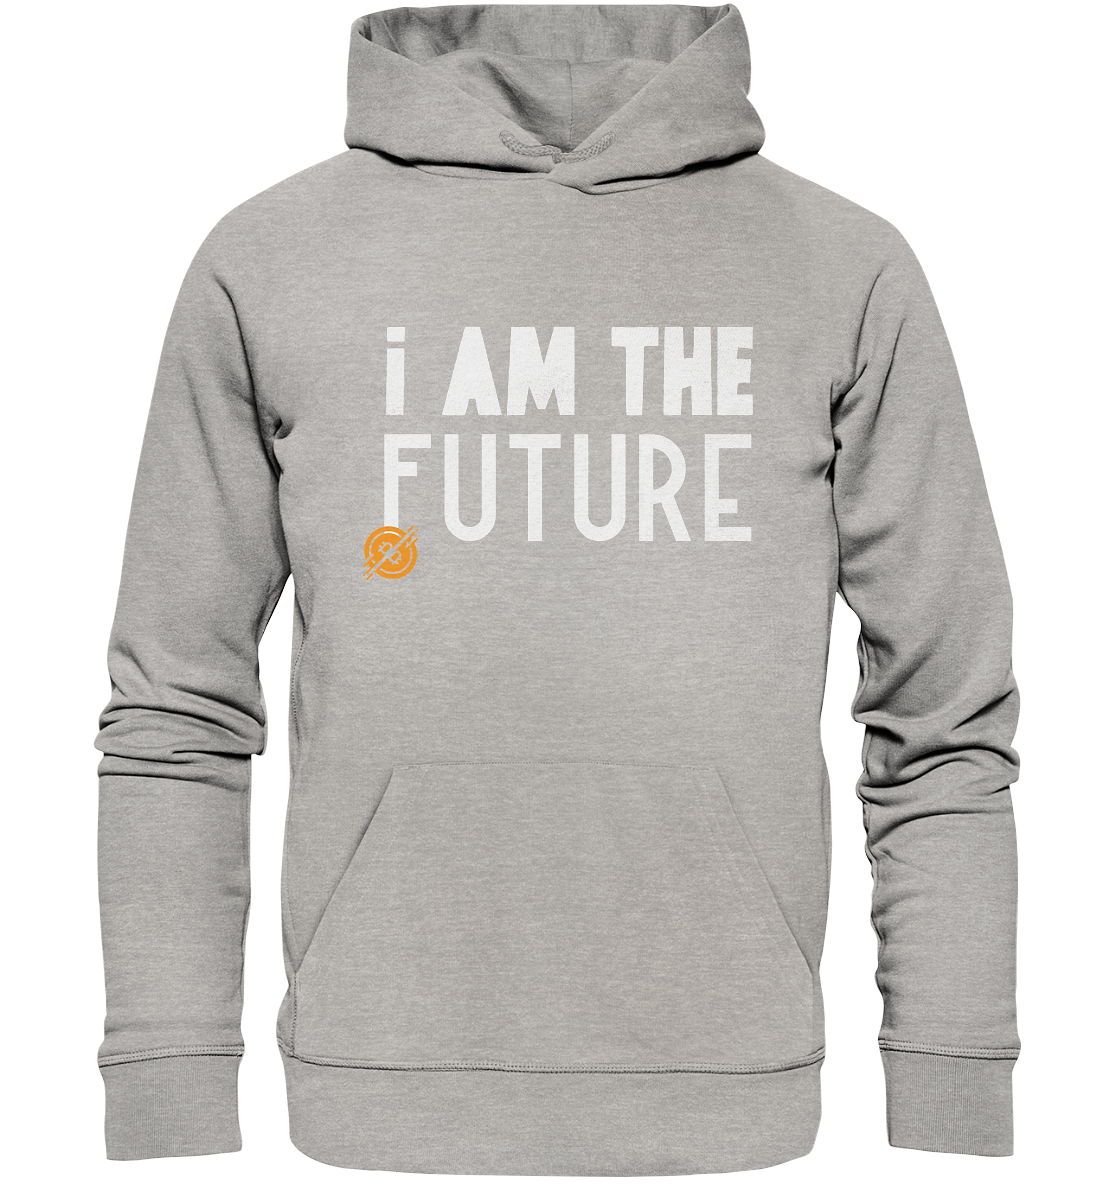 Bitcoin Hoodie "I am the future" - Organic Hoodie